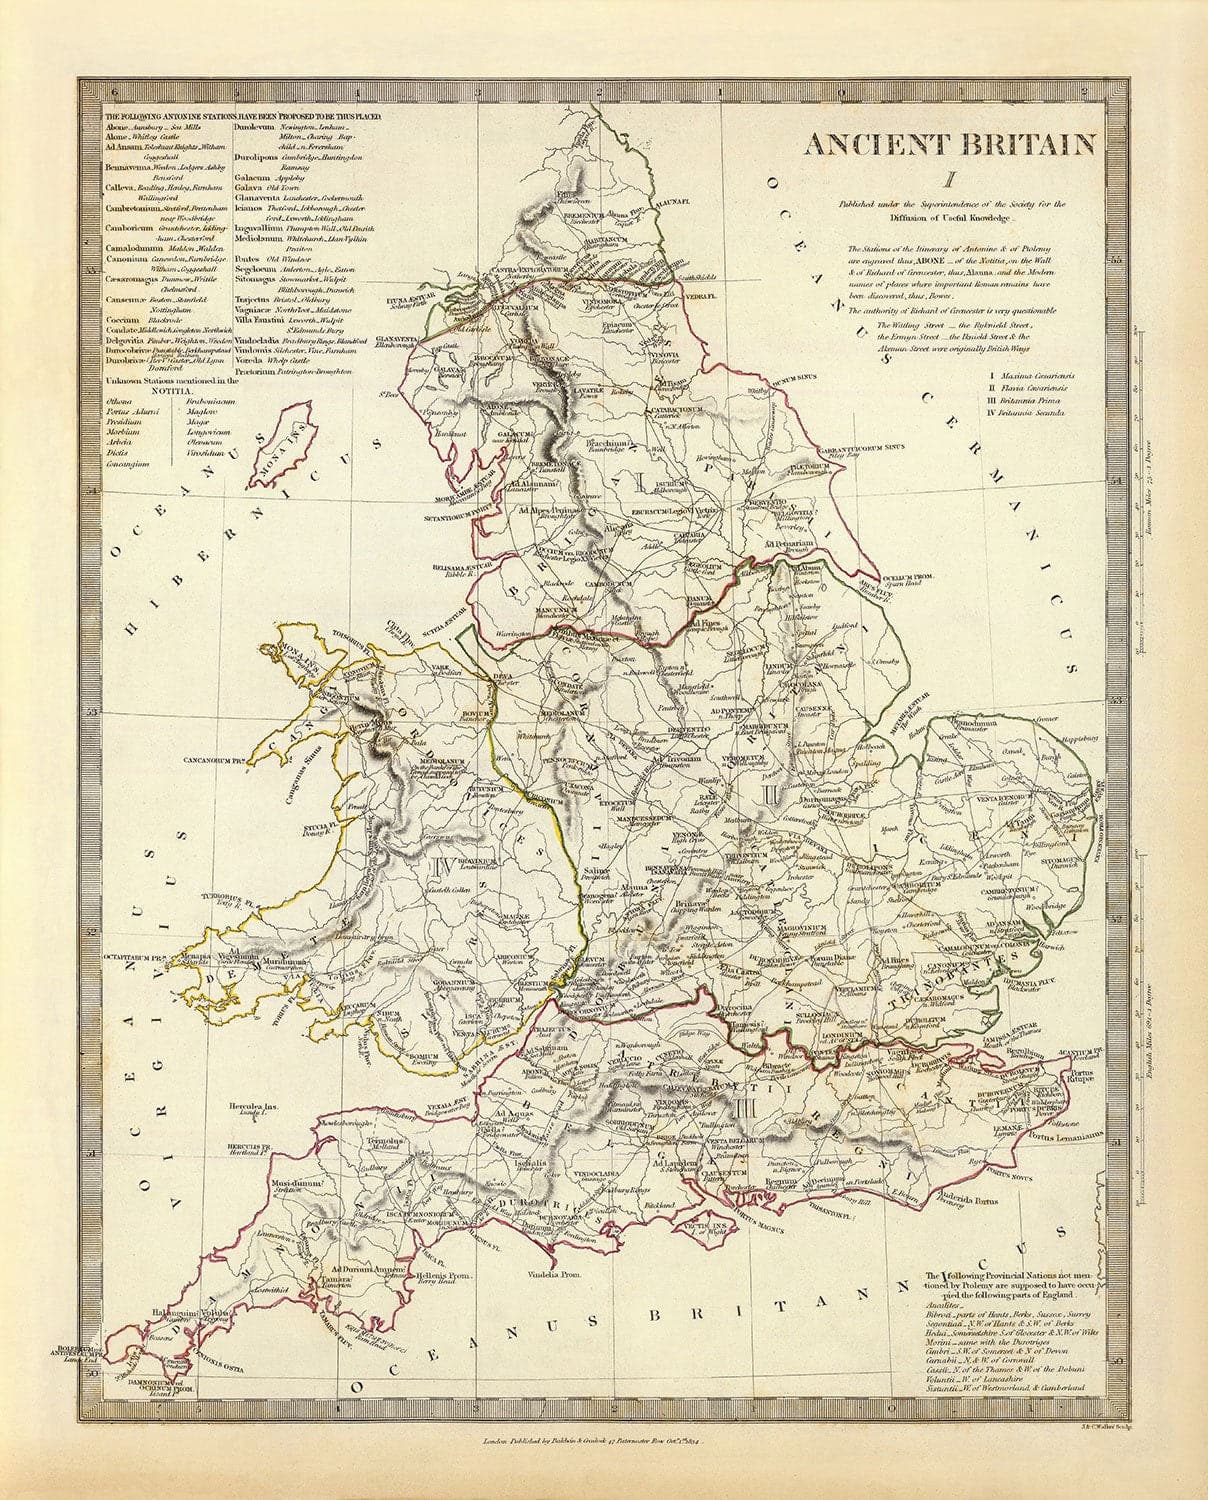 Antiguo mapa de la antigua Gran Bretaña, 1834 - Britania romana, tribus celtas, Silures, Dobunni, Parisi, Trinovantes, Regni